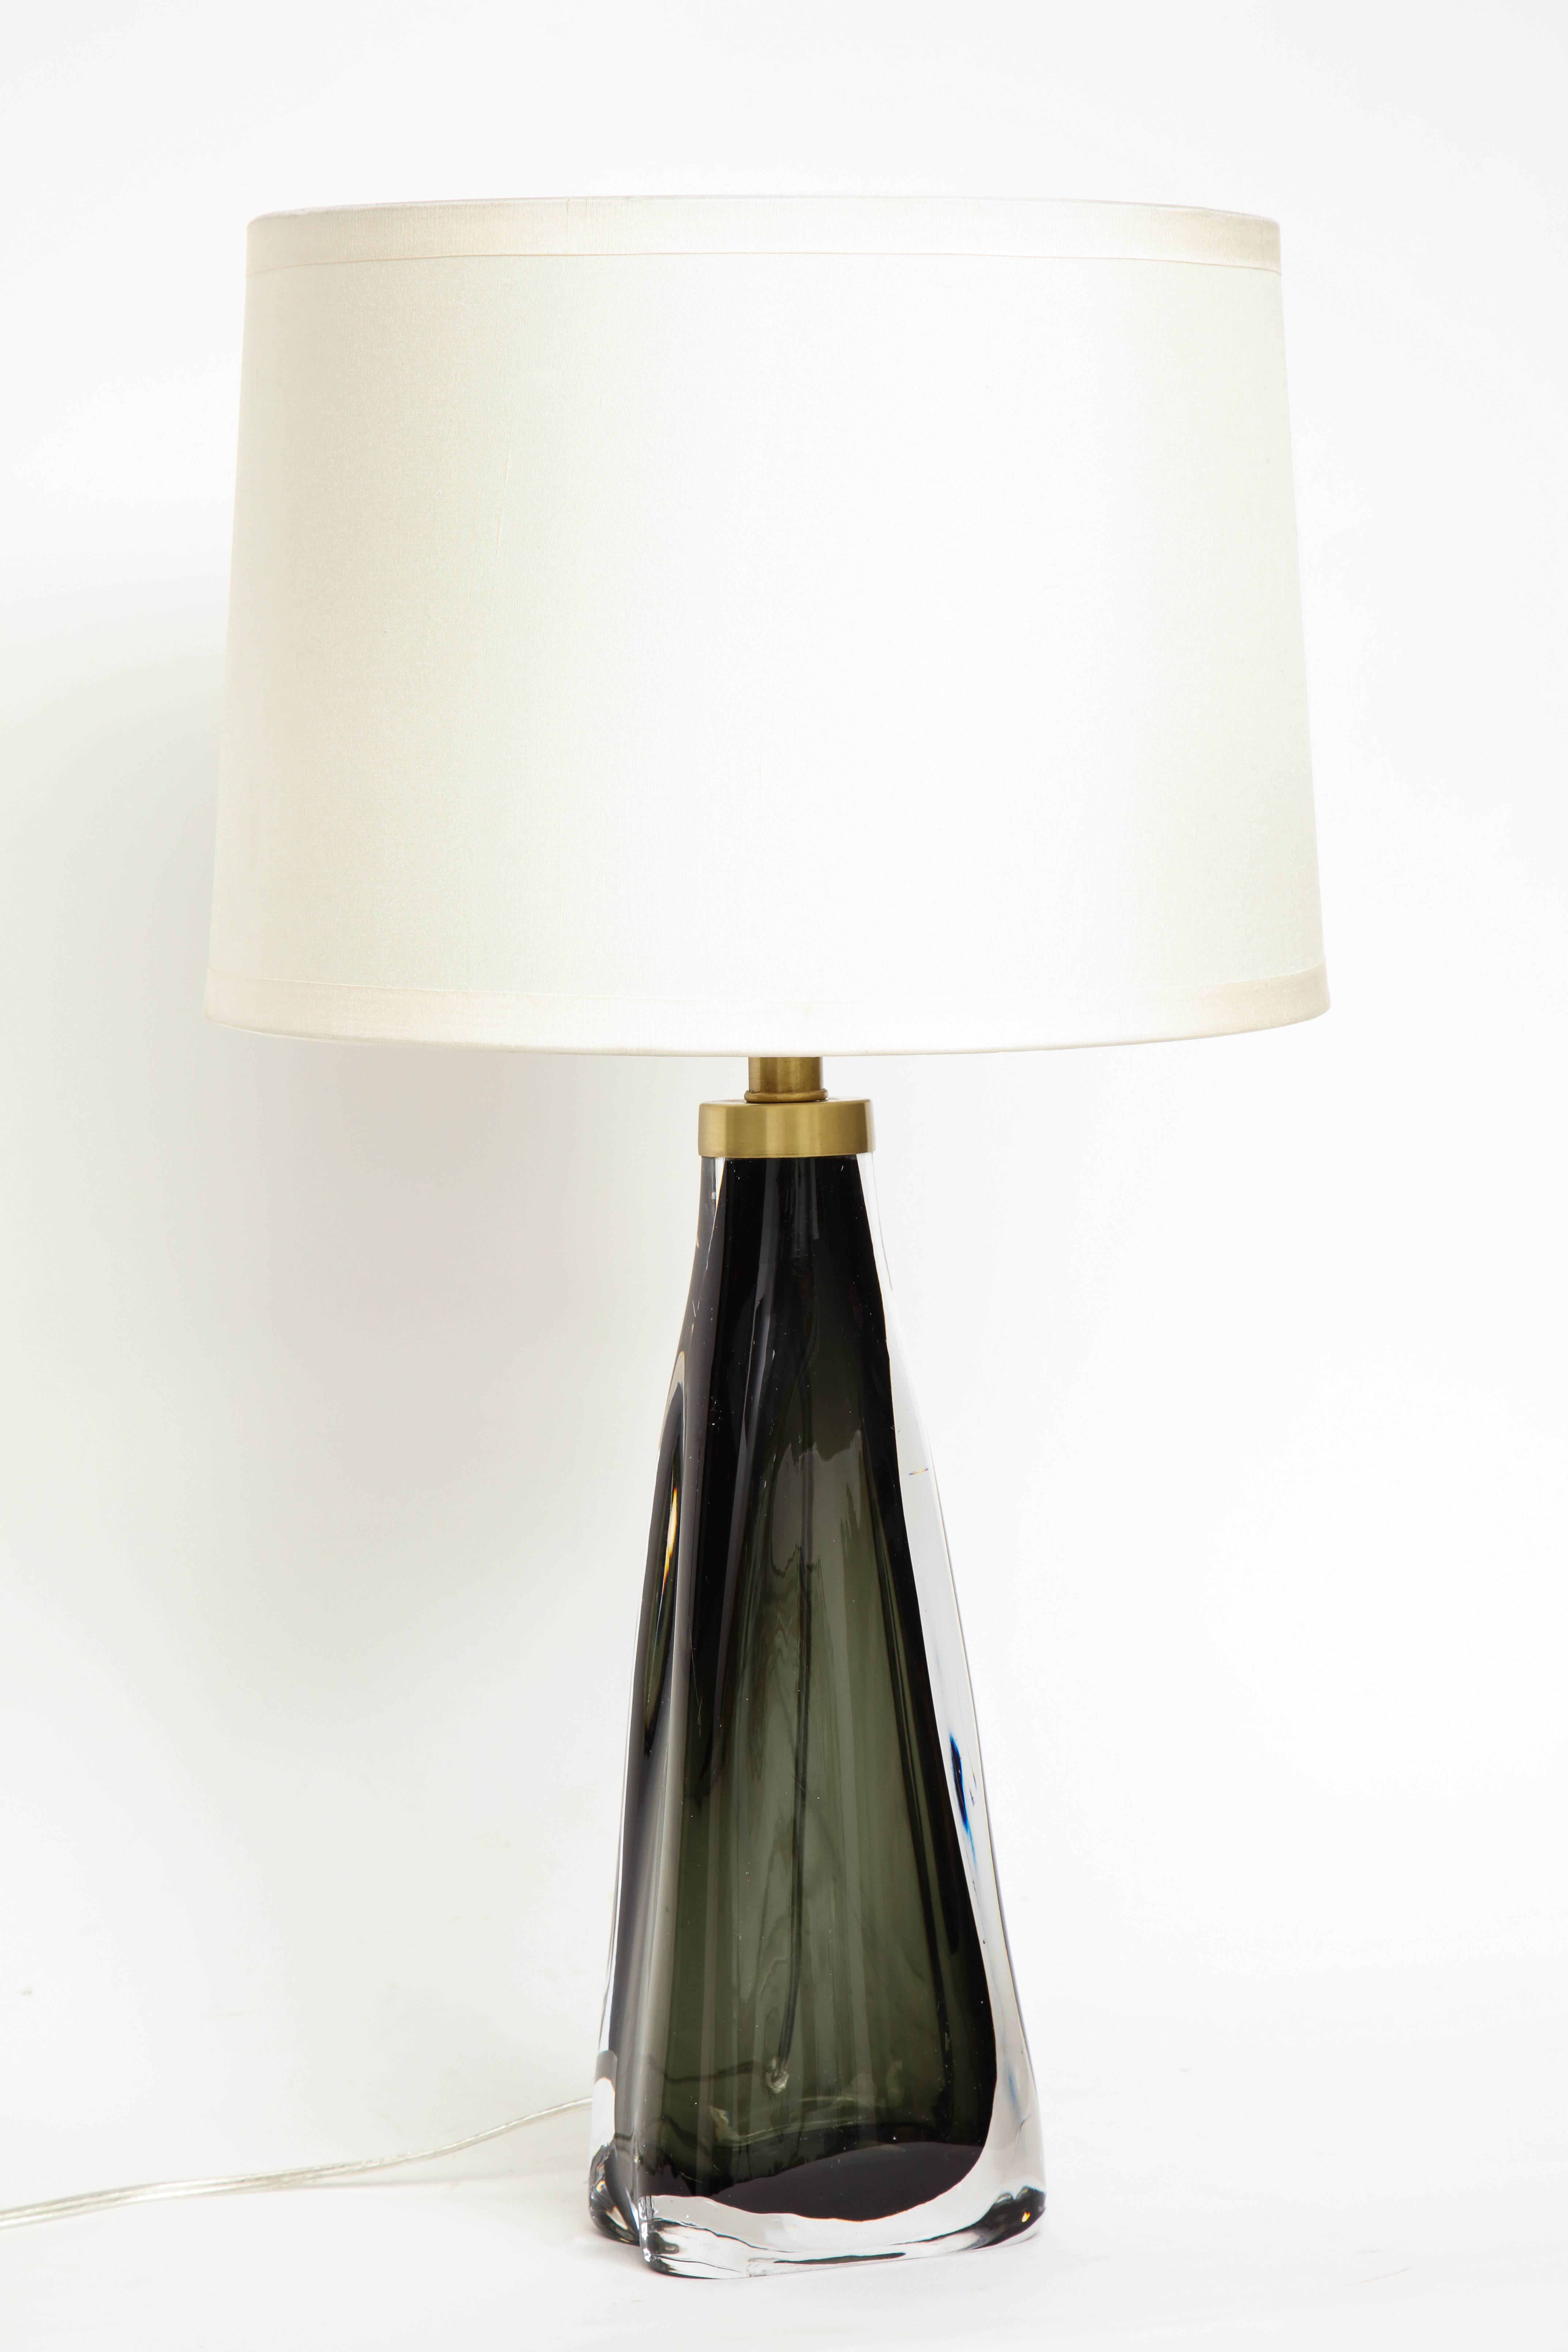 Scandinavian Modern Nils Landberg/Orrefors Dark Bottle Green Lamps For Sale